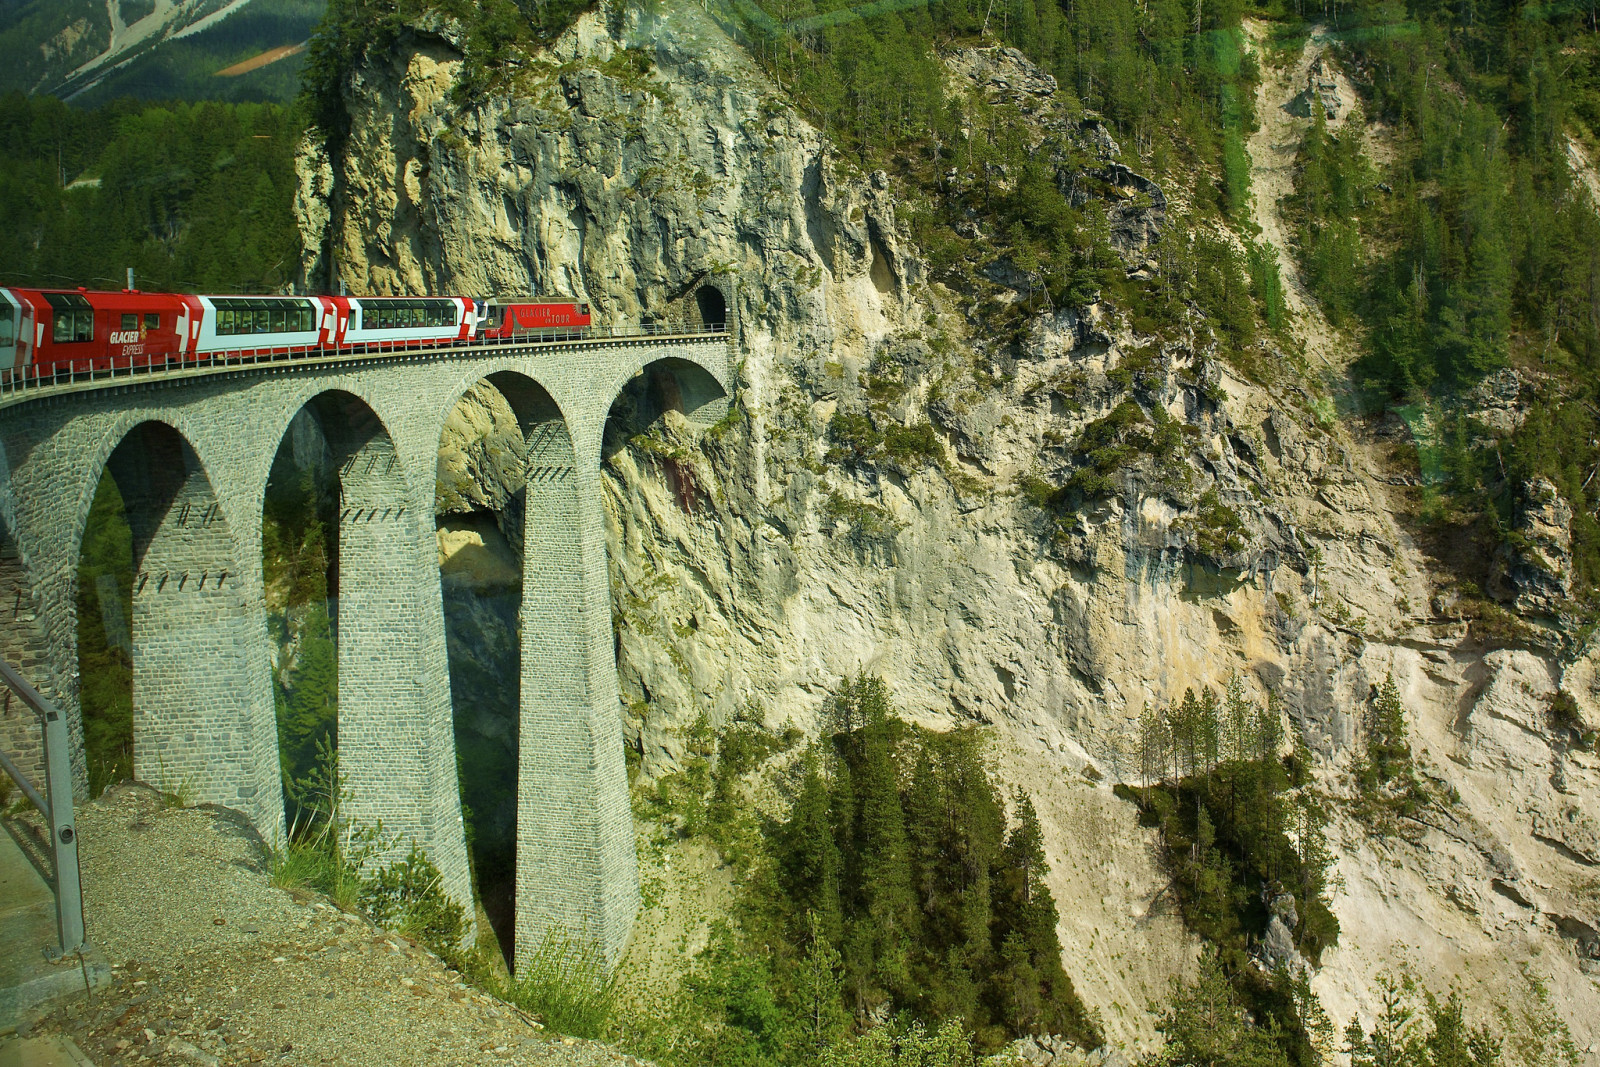 ประเทศสวิสเซอร์แลนด์, ภูเขา, อุโมงค์, รถไฟ, รถยนต์, สะพานลอย